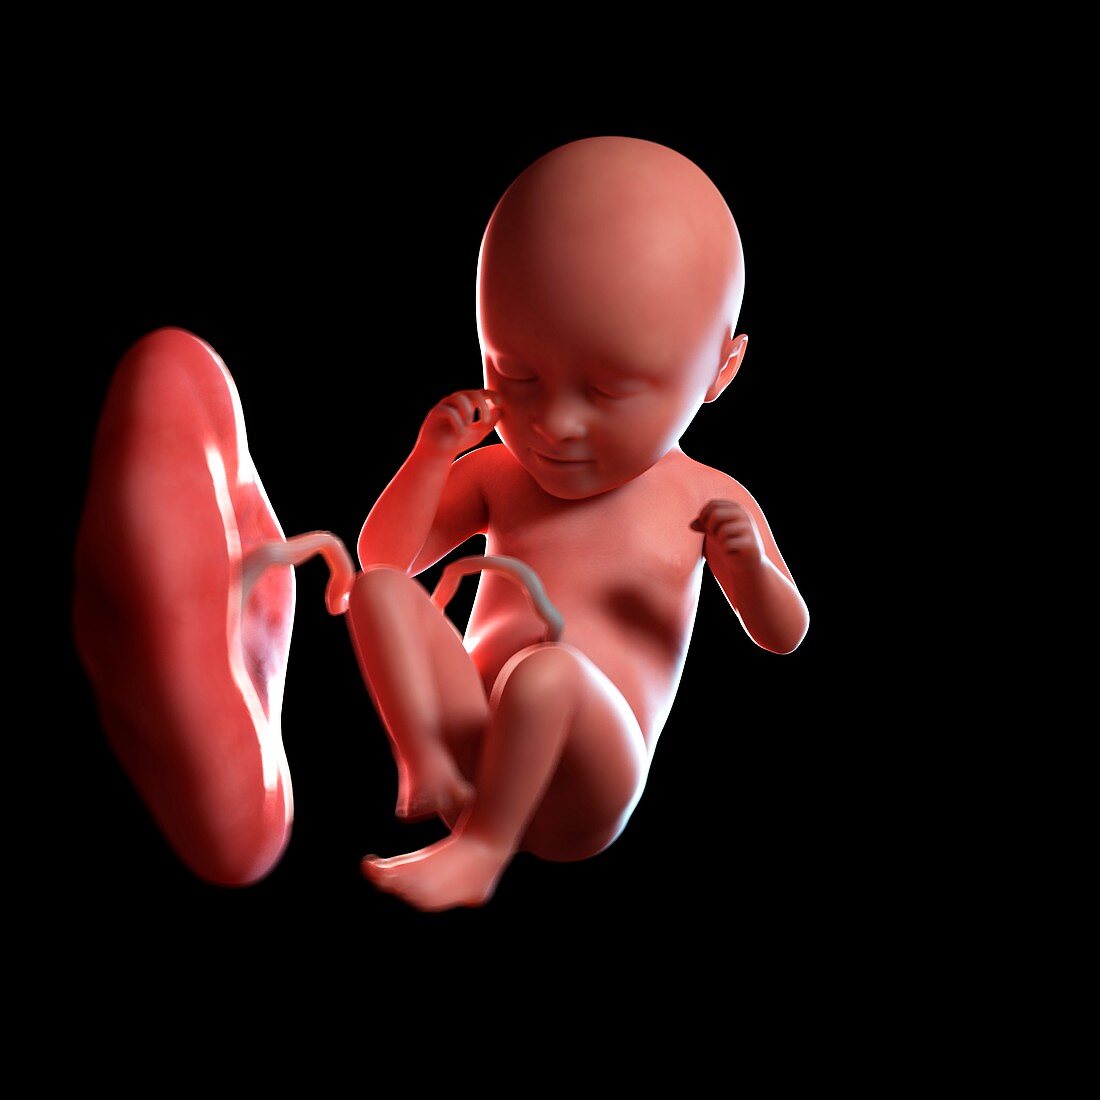 Human foetus age 35 weeks, illustration